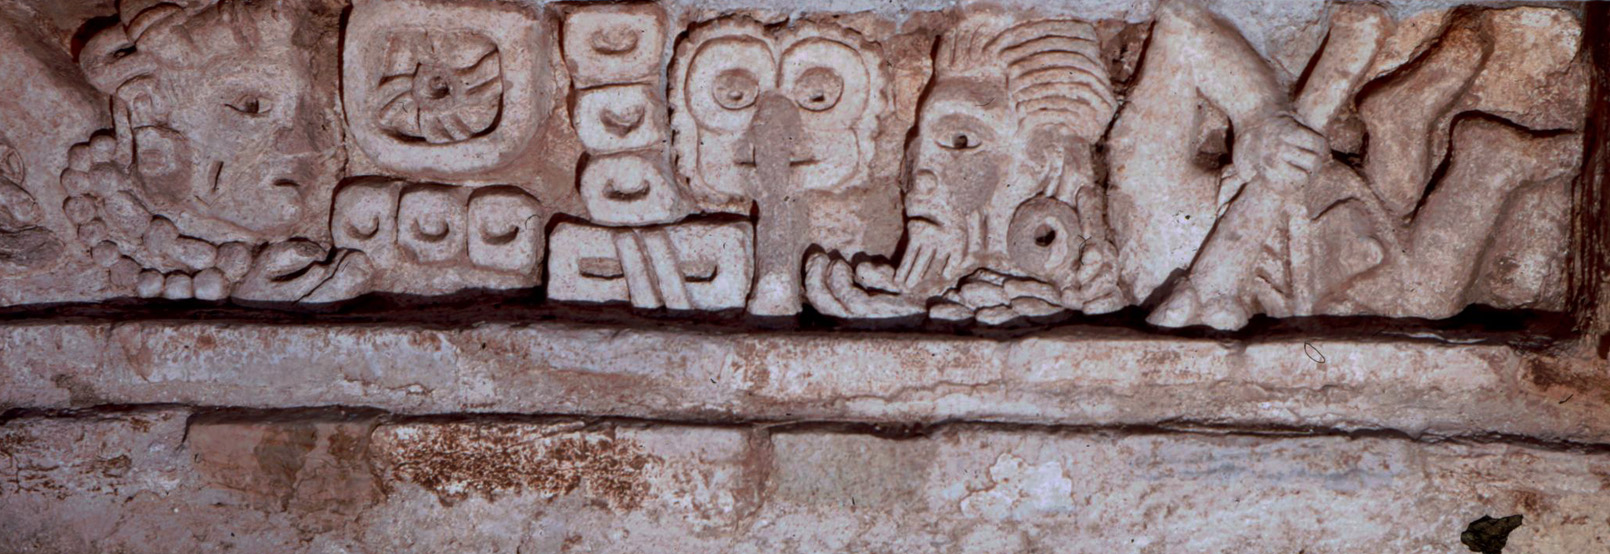 Arqueología Oaxaca 2